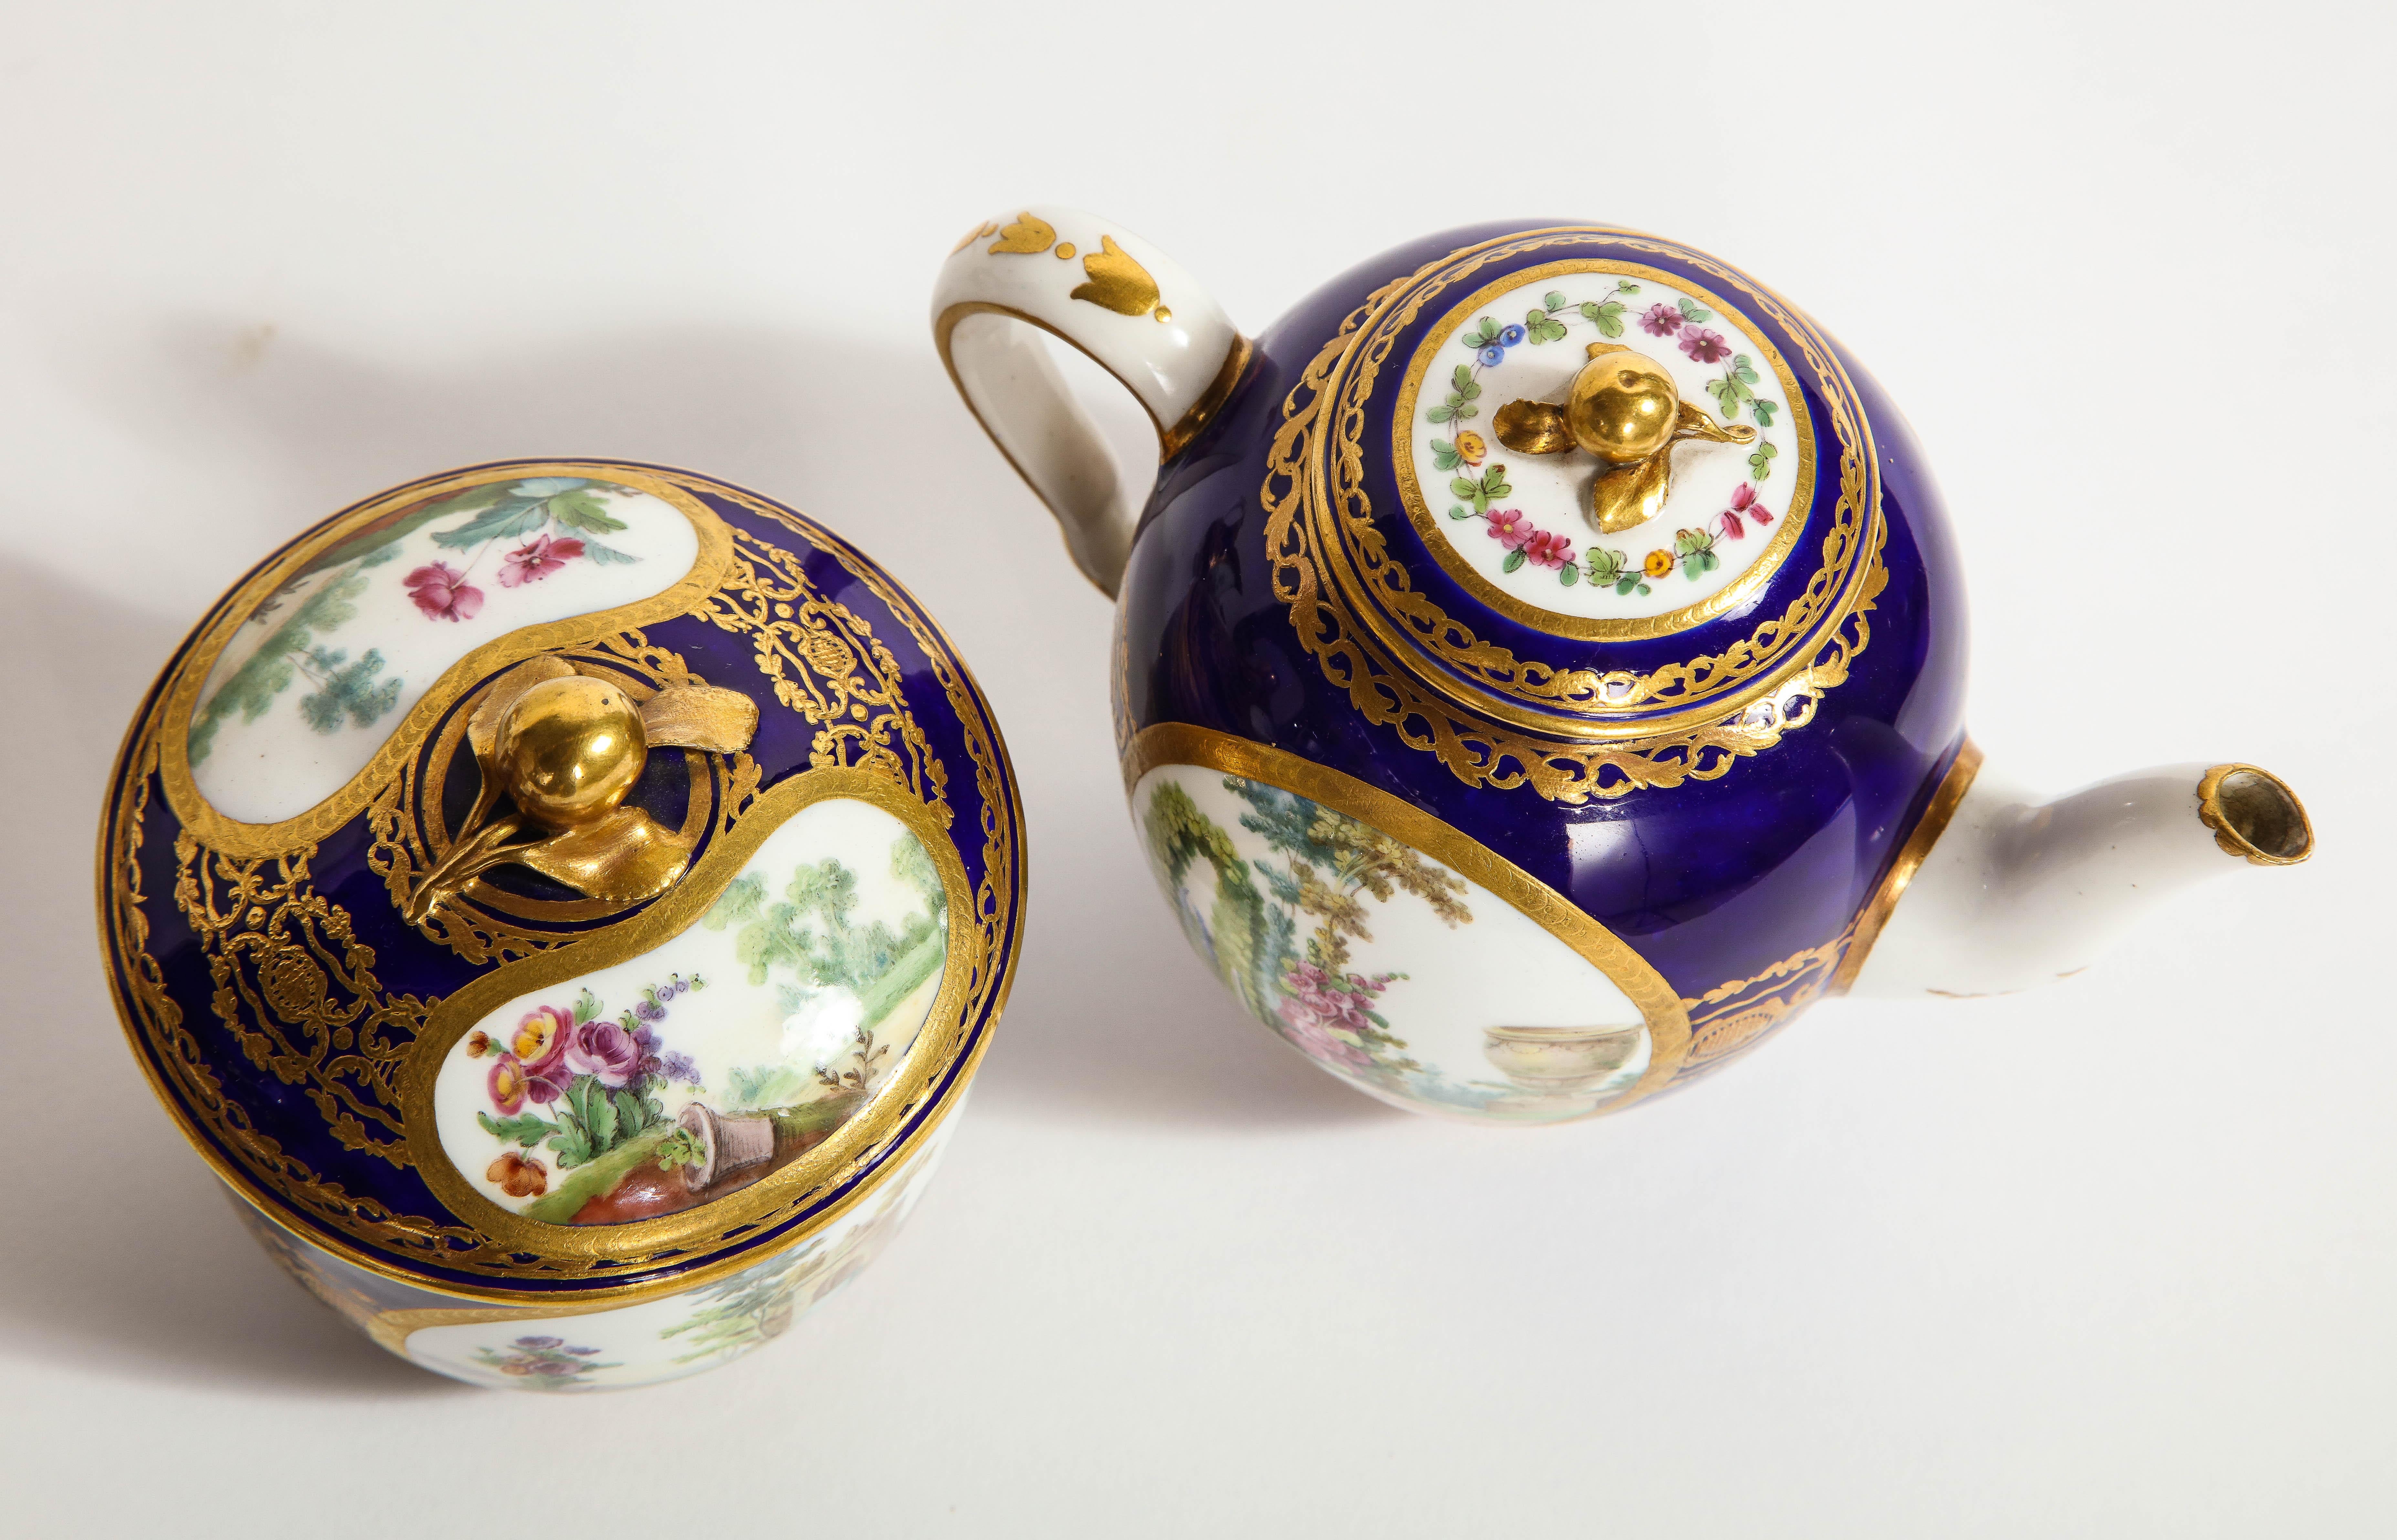 Porcelaine Service à thé complet en porcelaine de Sèvres du XVIIIe siècle, avec marque de peintres et de guildes